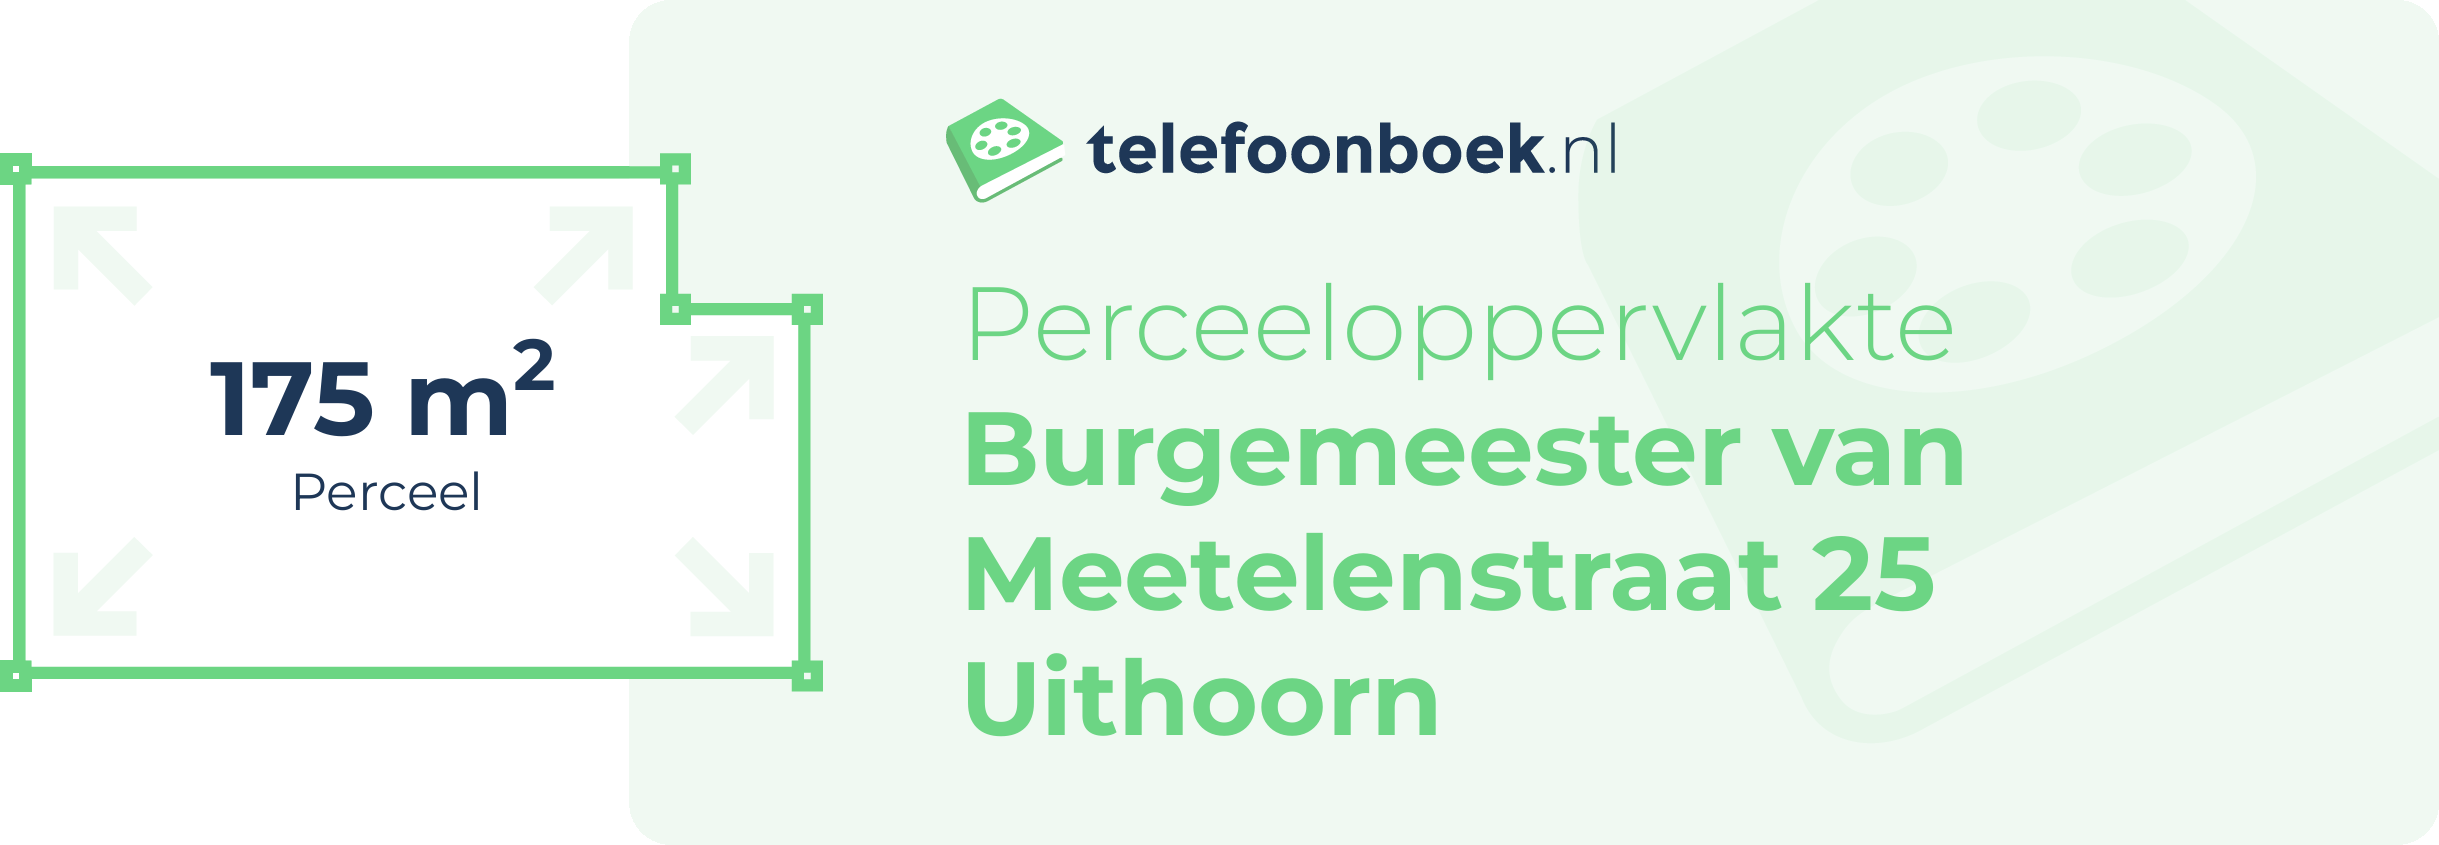 Perceeloppervlakte Burgemeester Van Meetelenstraat 25 Uithoorn